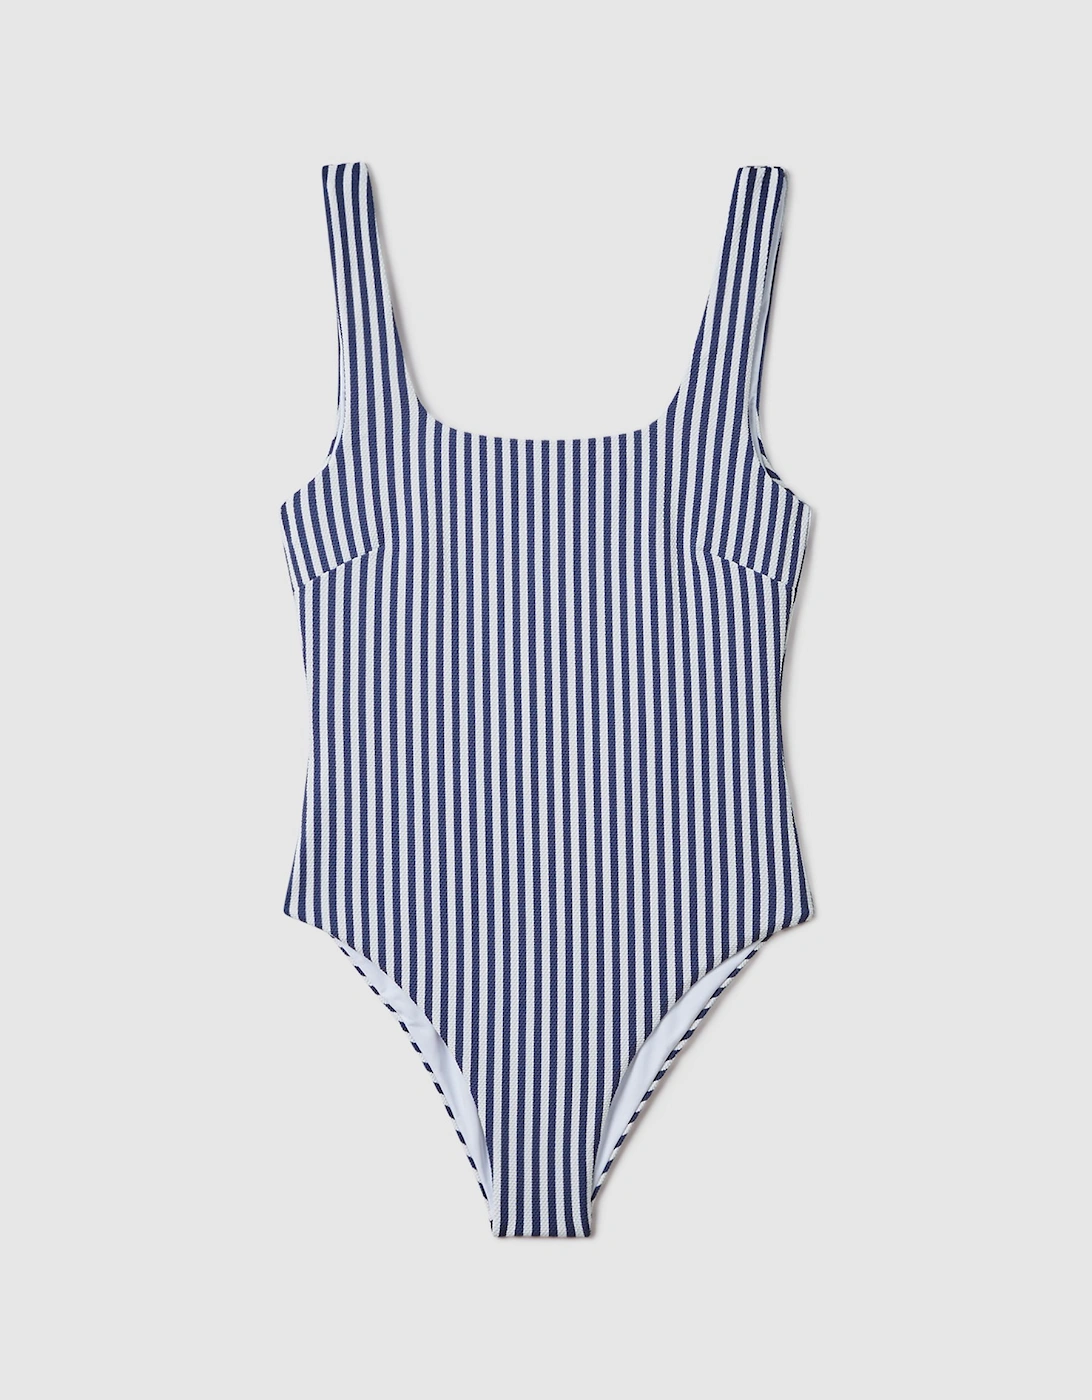 FELLA Striped Swimsuit, 2 of 1